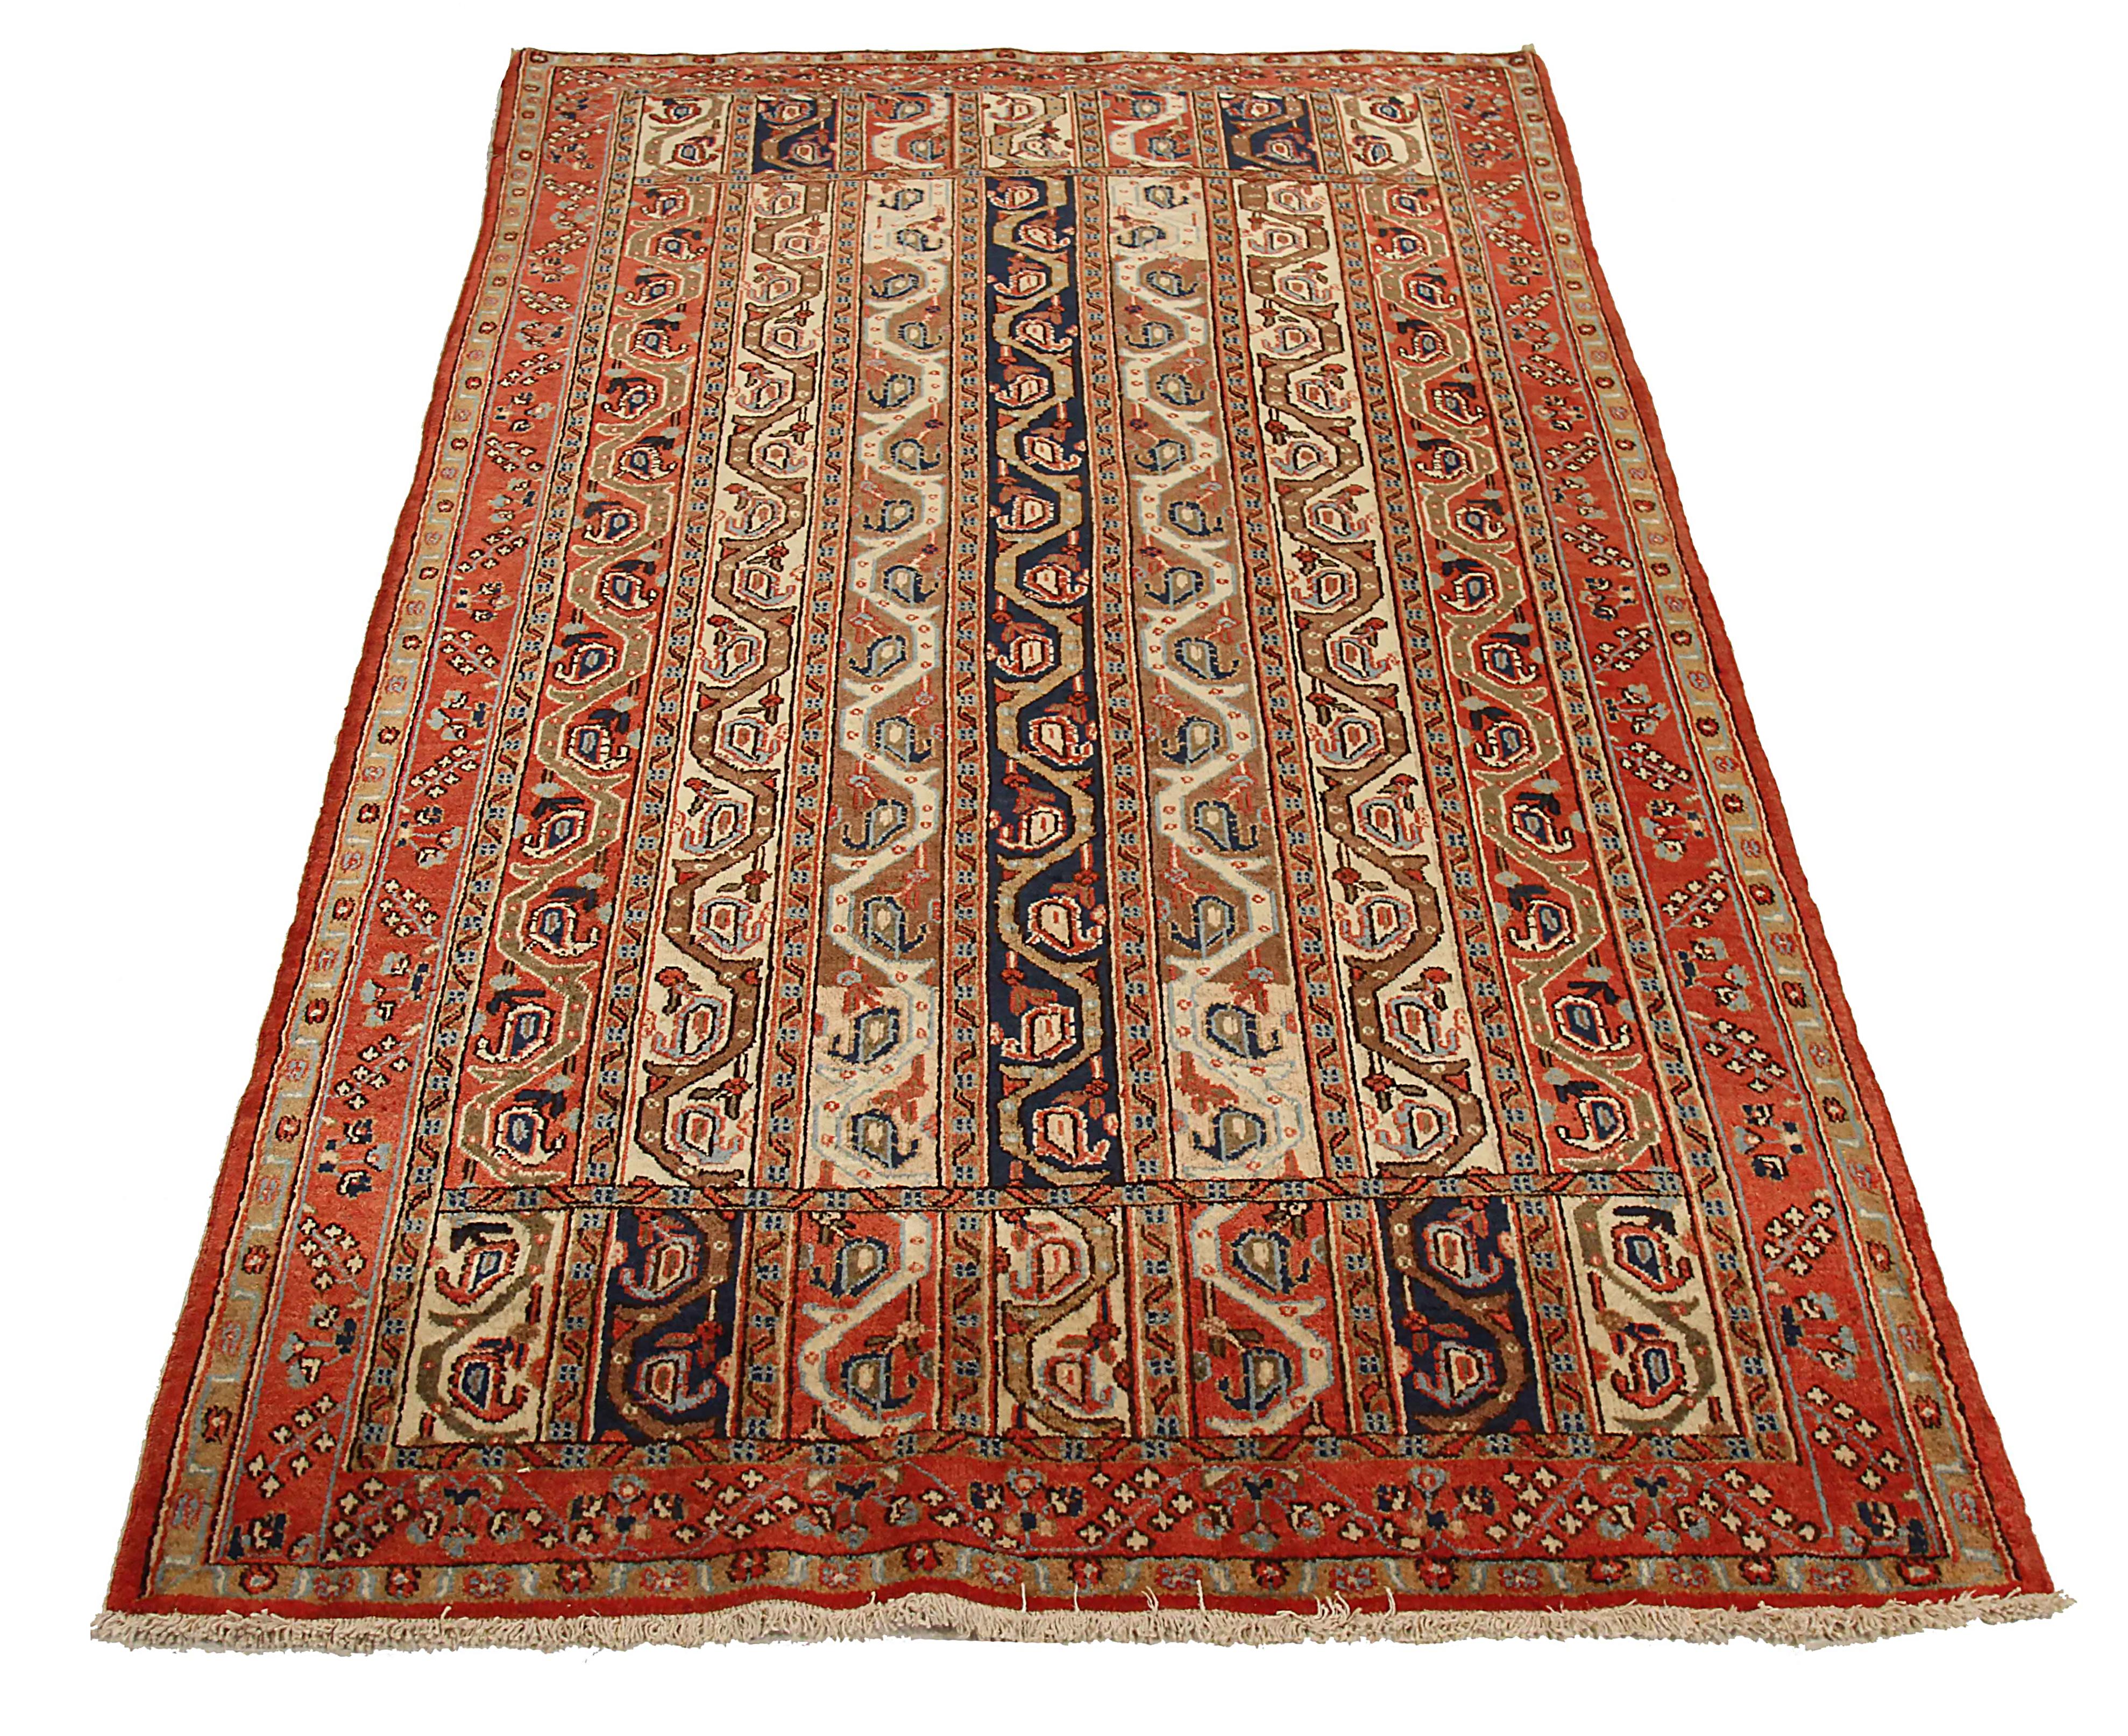 Ancien tapis persan tissé à la main à partir de la meilleure laine de mouton. Il est coloré avec des colorants végétaux entièrement naturels, sans danger pour les humains et les animaux de compagnie. Il s'agit d'un motif traditionnel de Qom tissé à